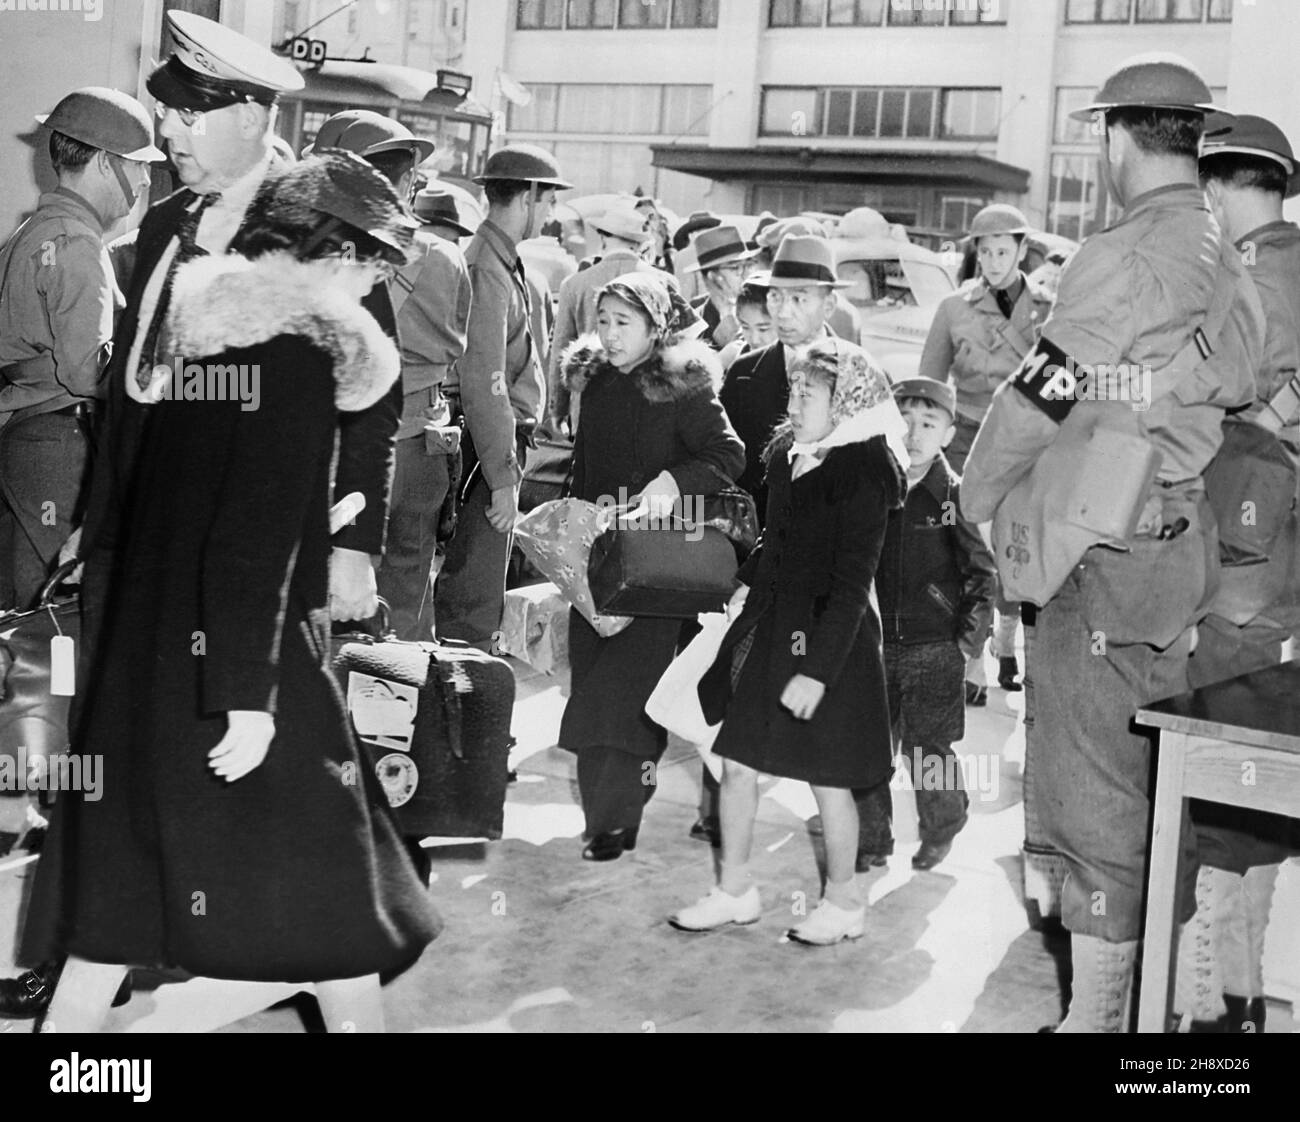 Famille japonaise-américaine quittant pour le centre de réinstallation, San Francisco, Californie, États-Unis, US Army signal corps, mai 1942 Banque D'Images